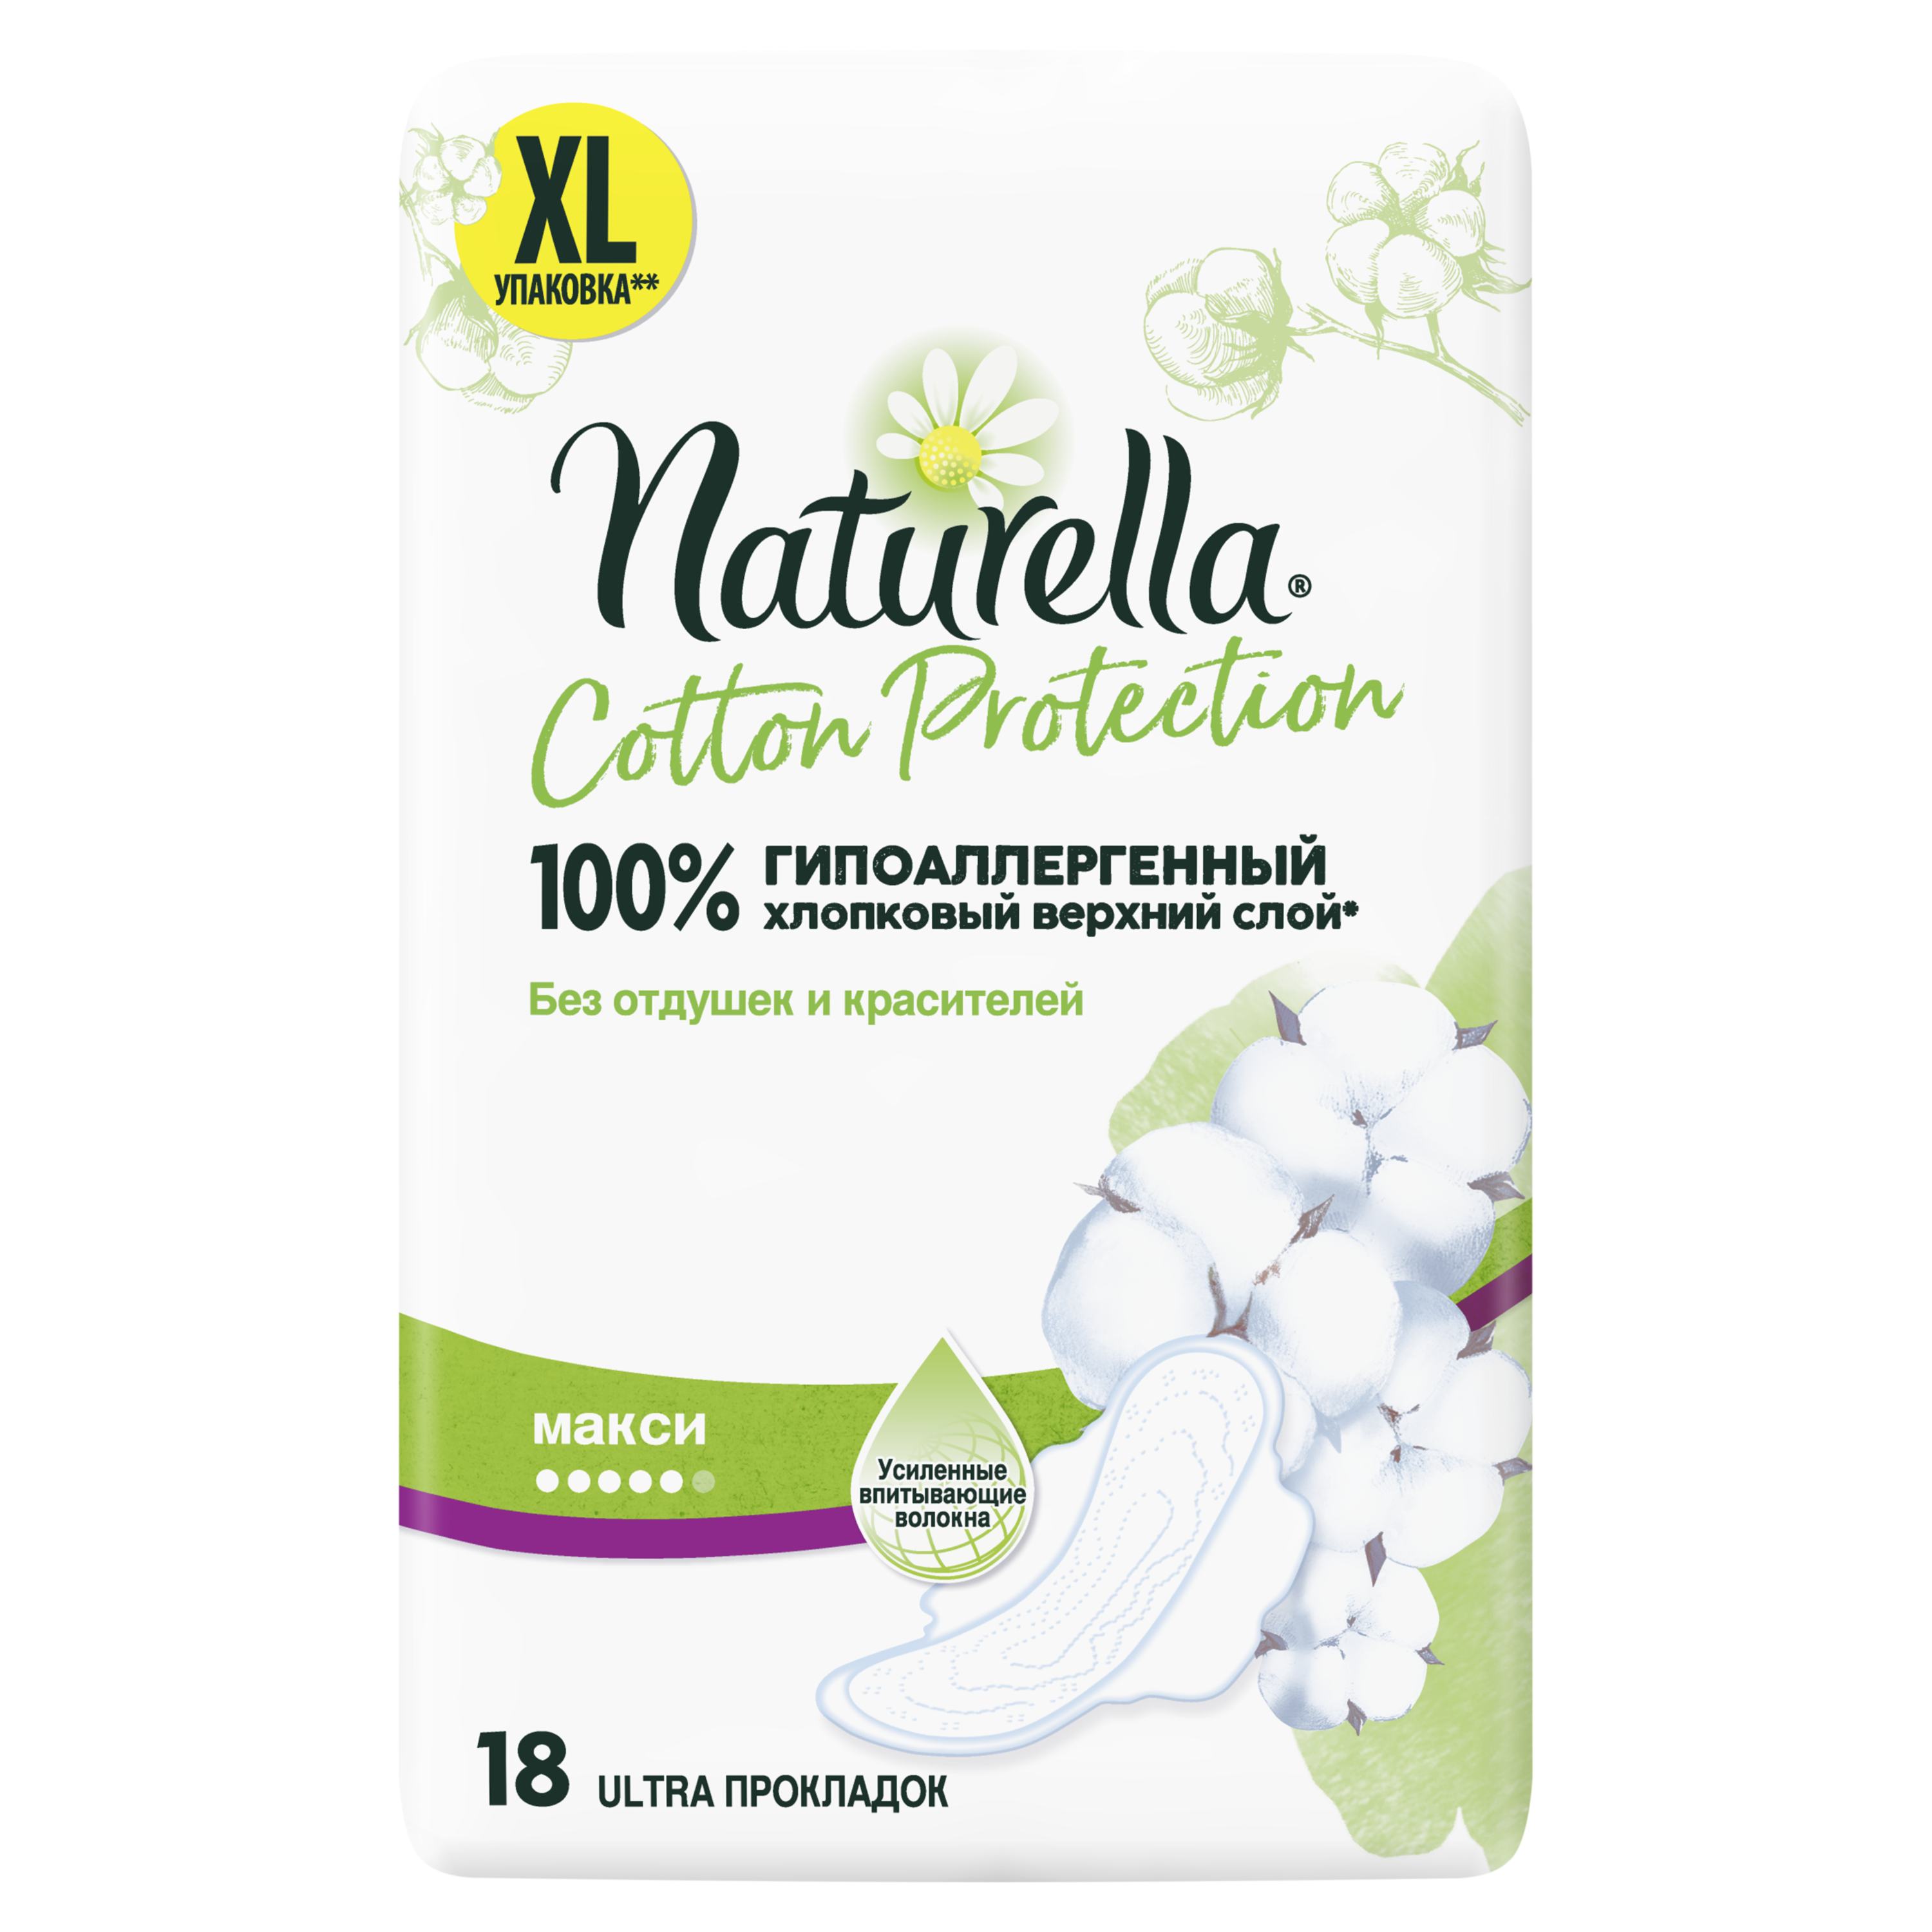 Прокладки Гигиенические Naturella Cotton Protection Maxi 18 maxi раскраска любимые герои